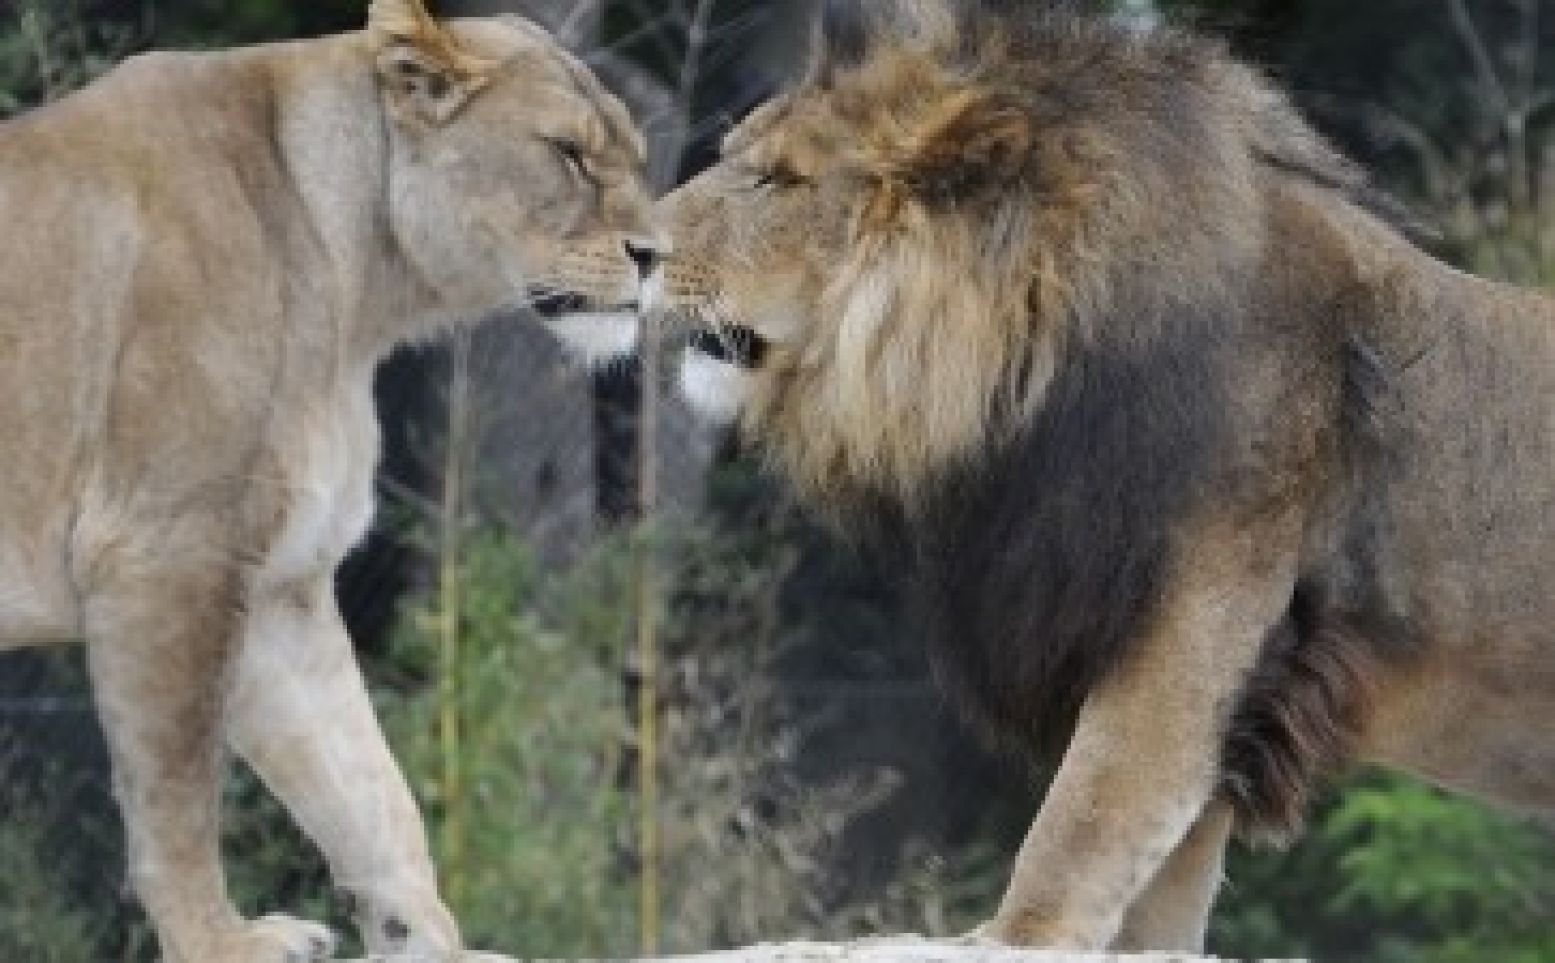 Leeuwen in een troep zijn elkaar altijd trouw. Foto: Dierenpark Emmen